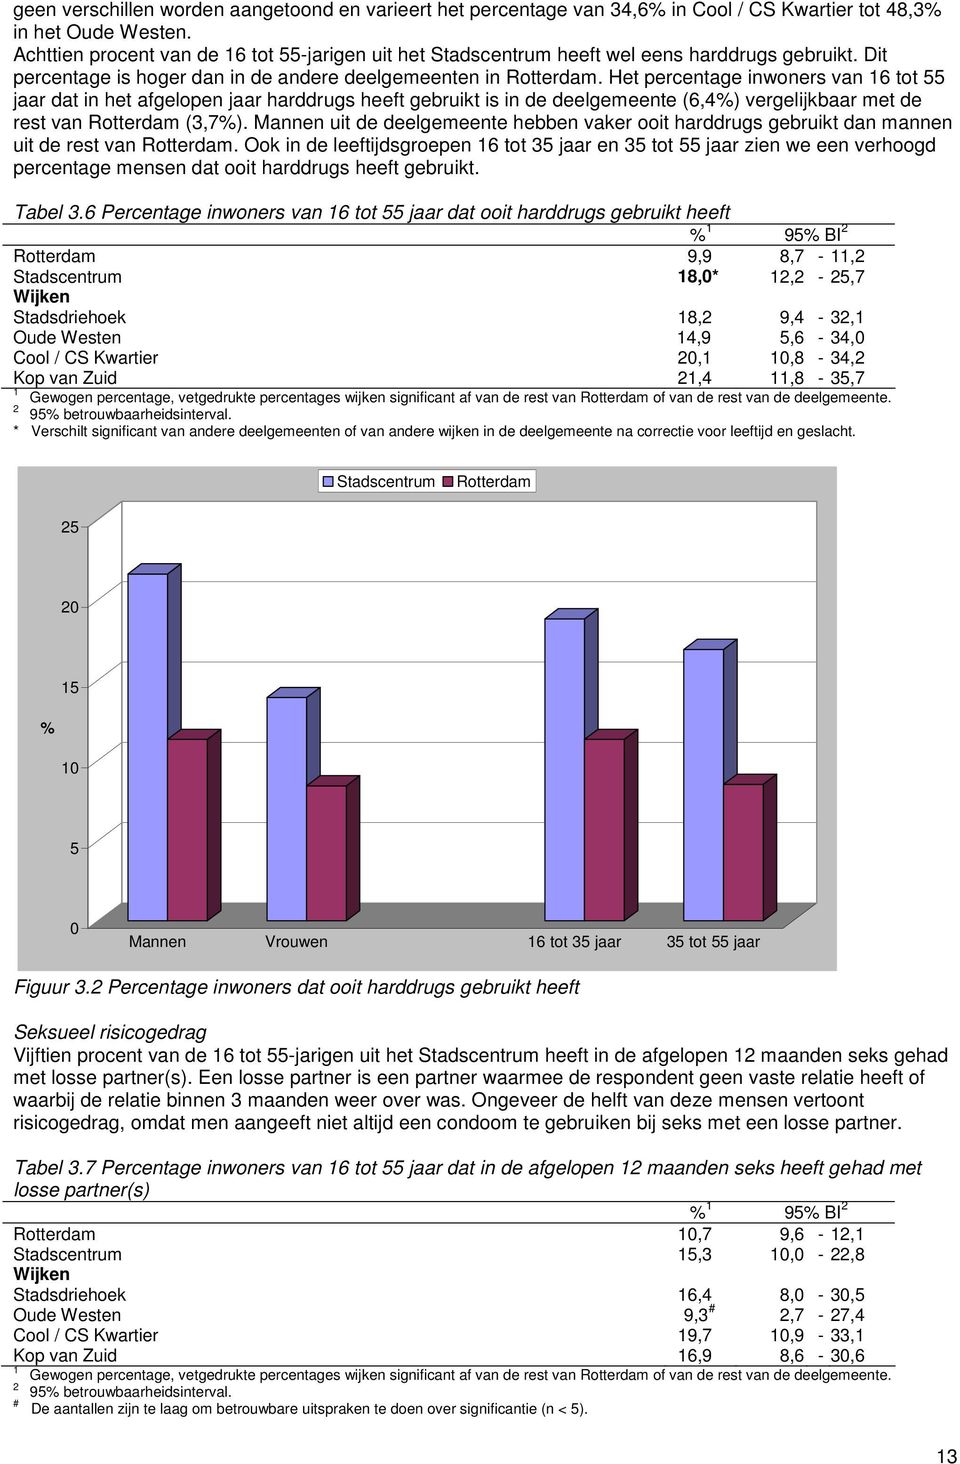 Het percentage inwoners van 6 tot 55 jaar dat in het afgelopen jaar harddrugs heeft gebruikt is in de deelgemeente (6,4%) vergelijkbaar met de rest van Rotterdam (3,7%).